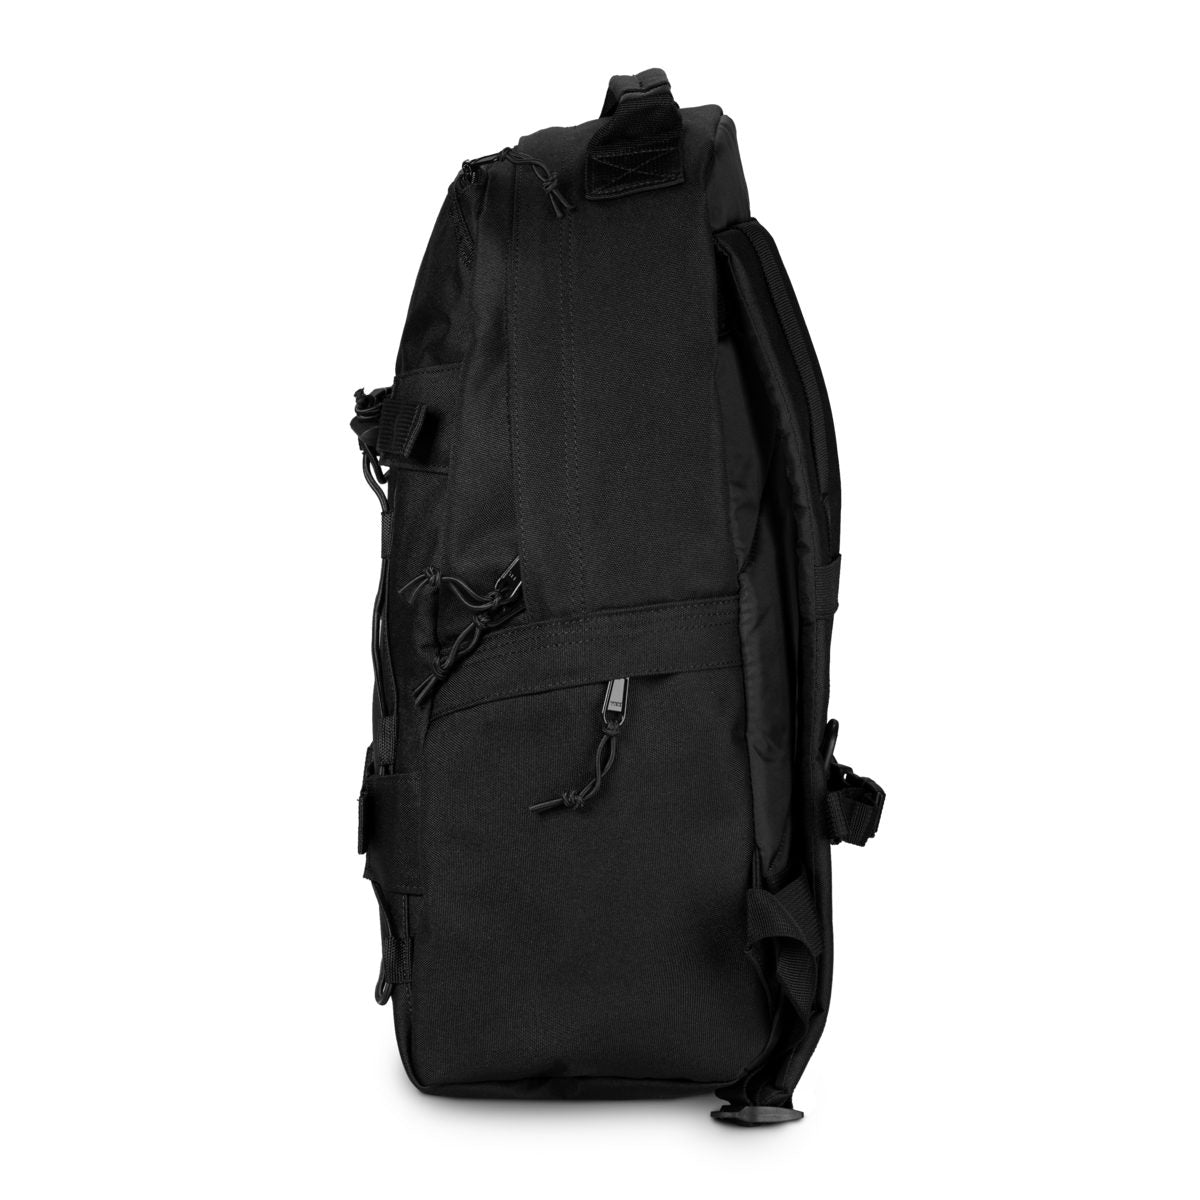 CARHARTT WIP Kickflip Backpack - Black